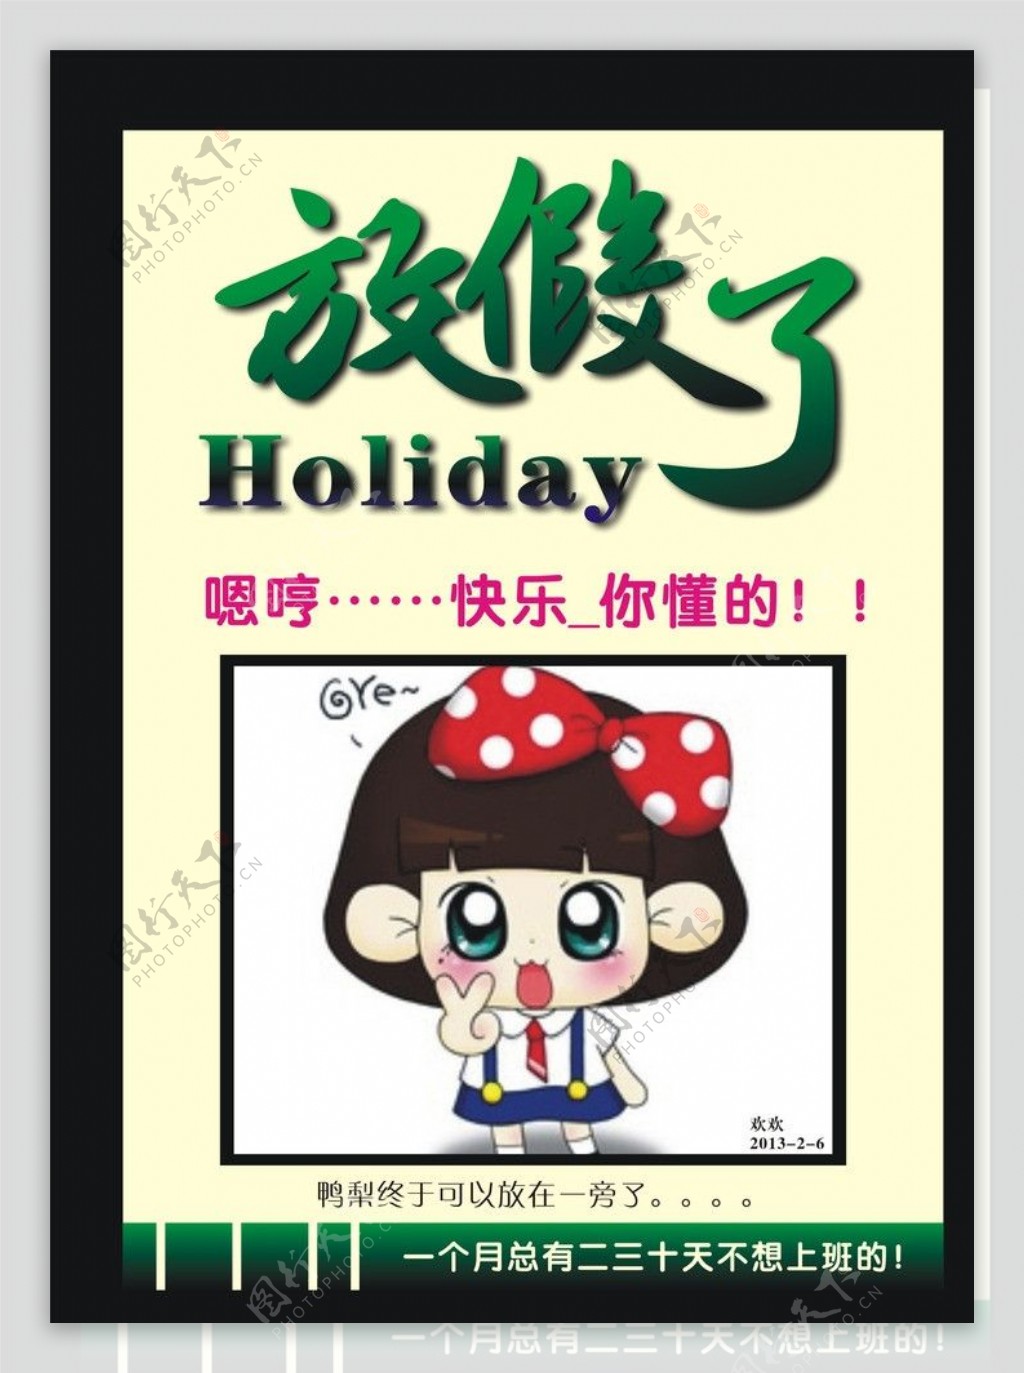 粉白色休假中头像开启假期模式休假头像卡通分享中文微信头像 - 模板 - Canva可画